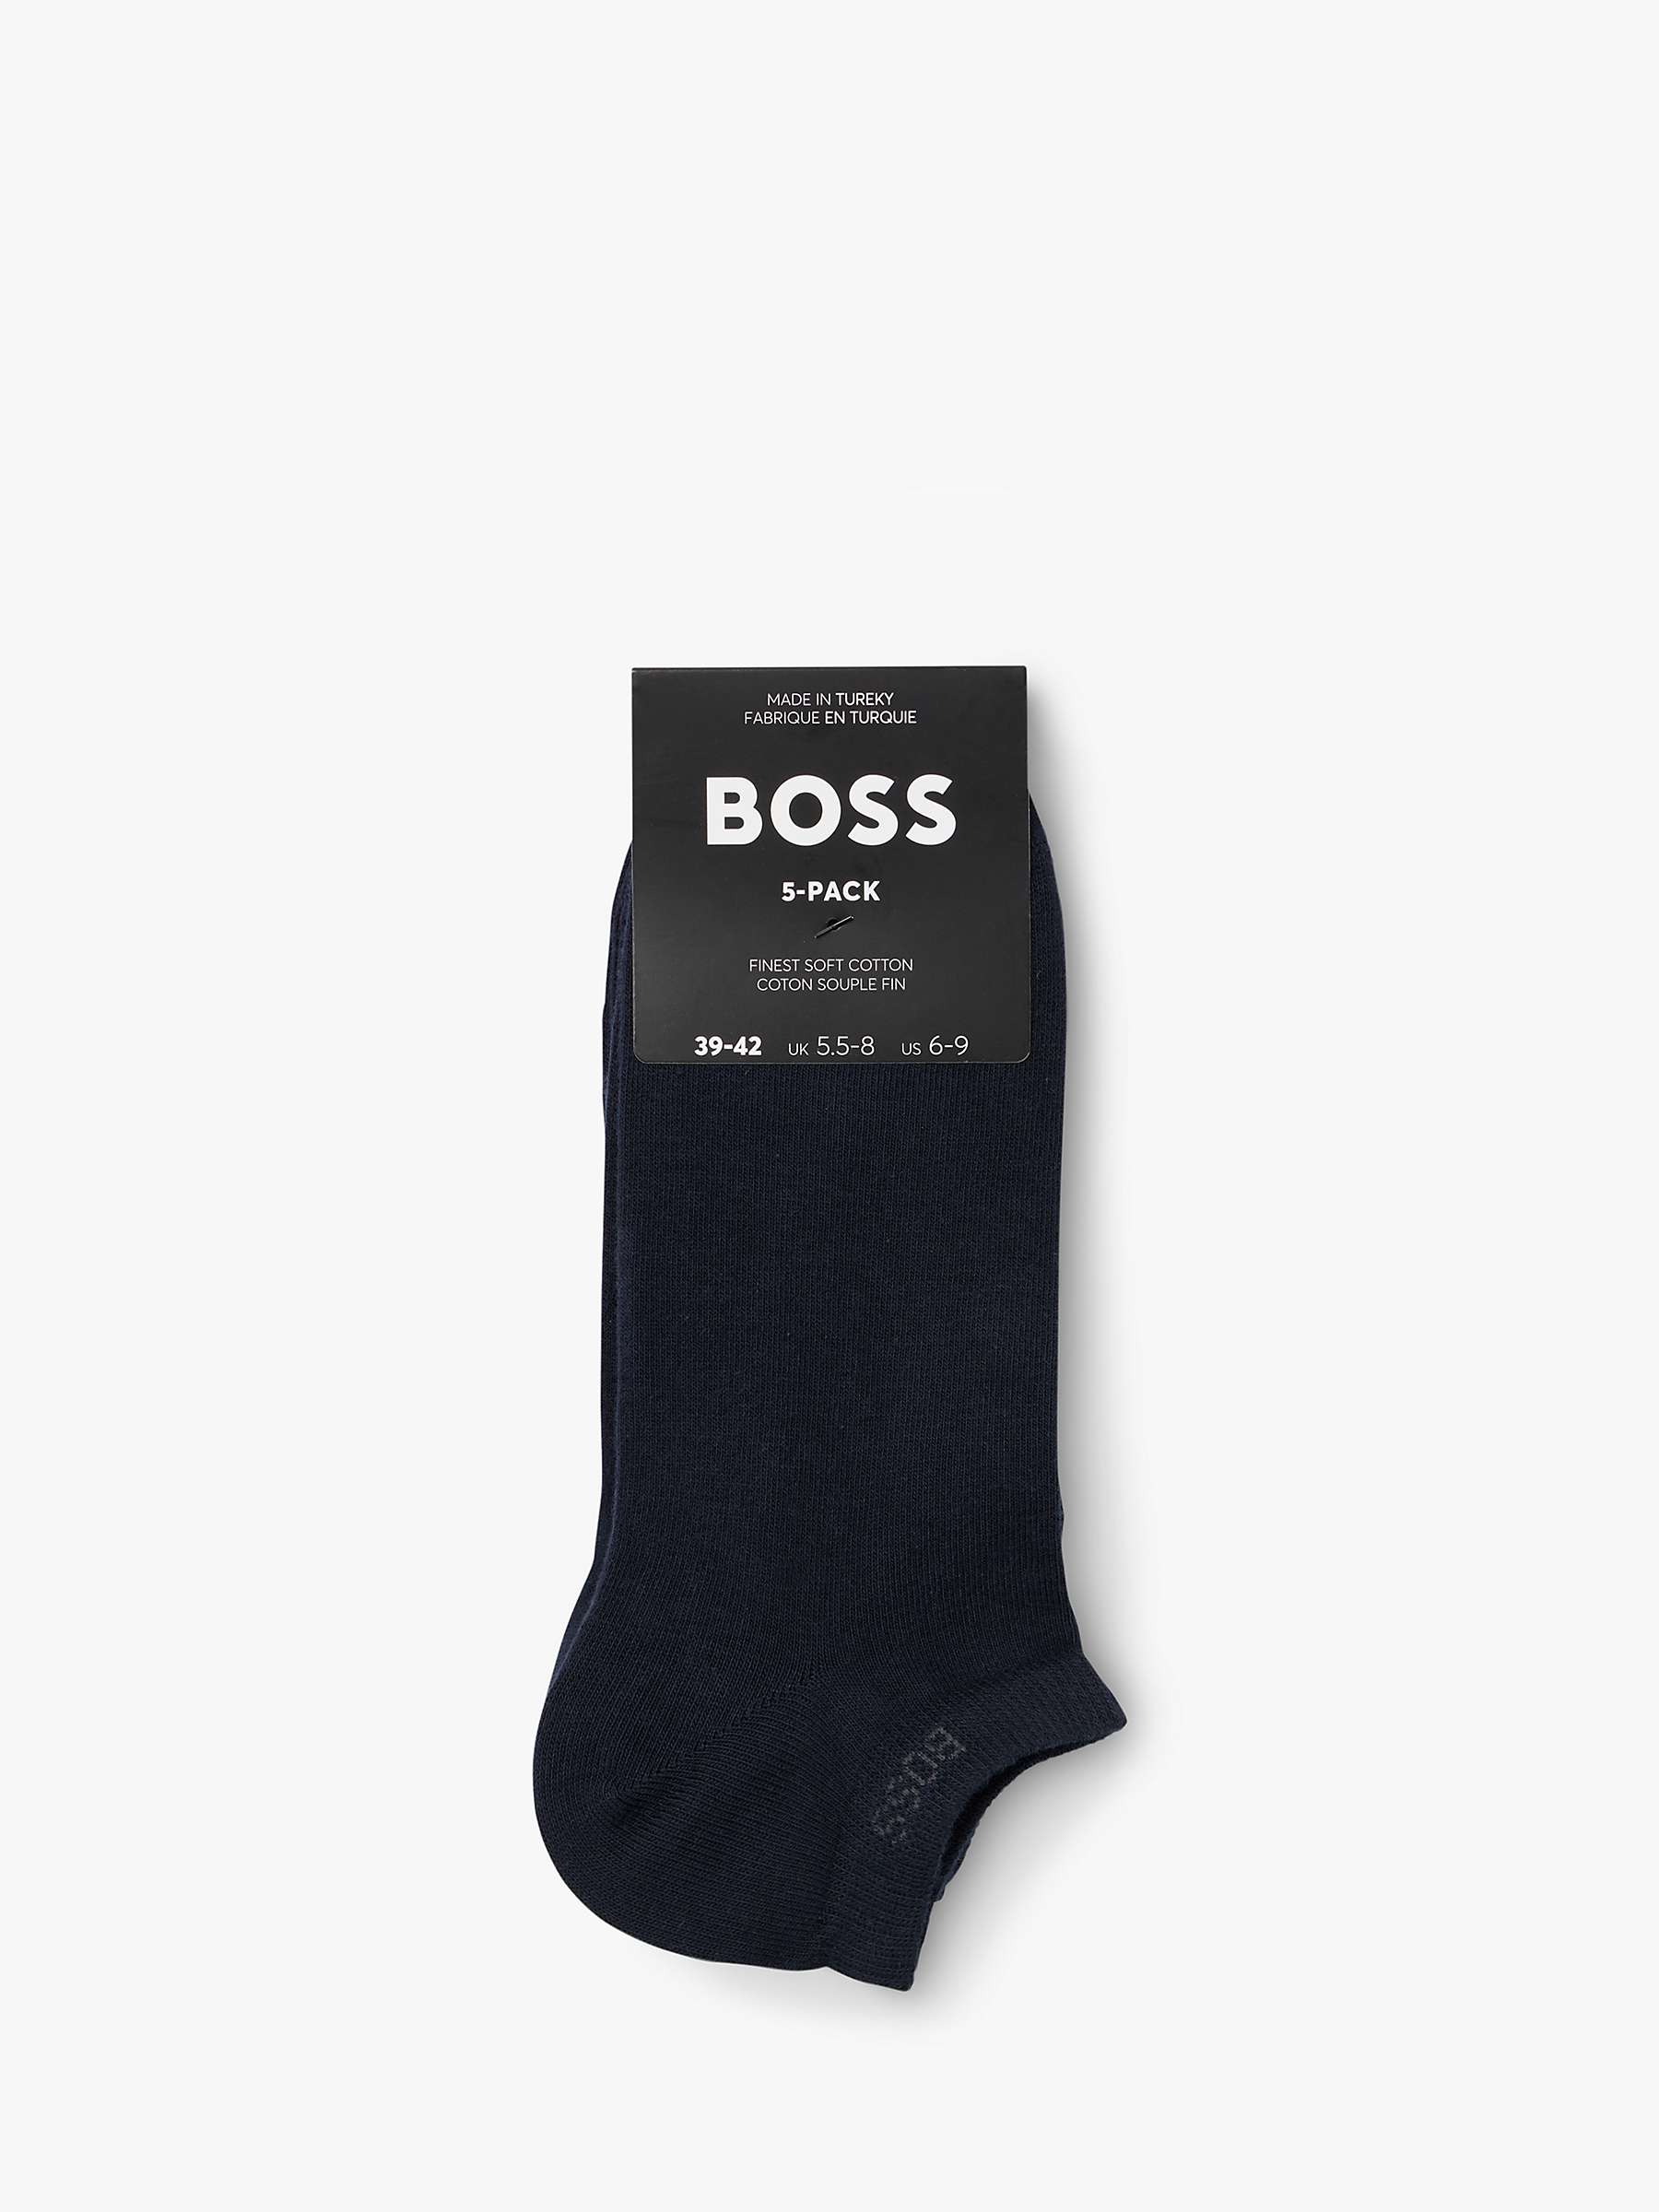 Buy BOSS Logo Trainer Socks, Pack of 5 Online at johnlewis.com